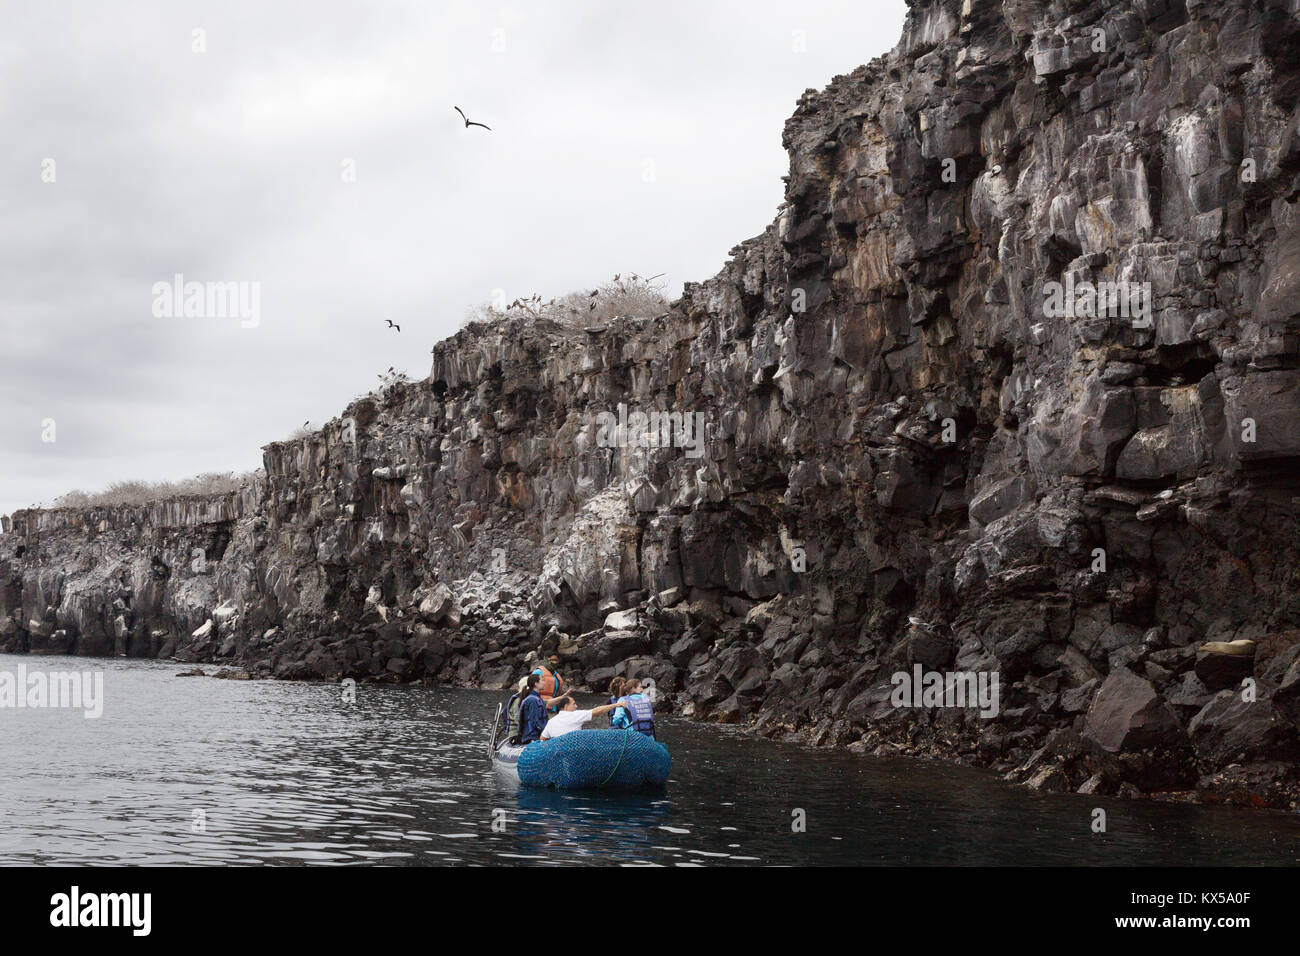 Touristen in einem Boot auf der Suche nach Vögel auf das Lavagestein Klippen, Genovesa Island, Galapagos Inseln Ecuador Südamerika Stockfoto